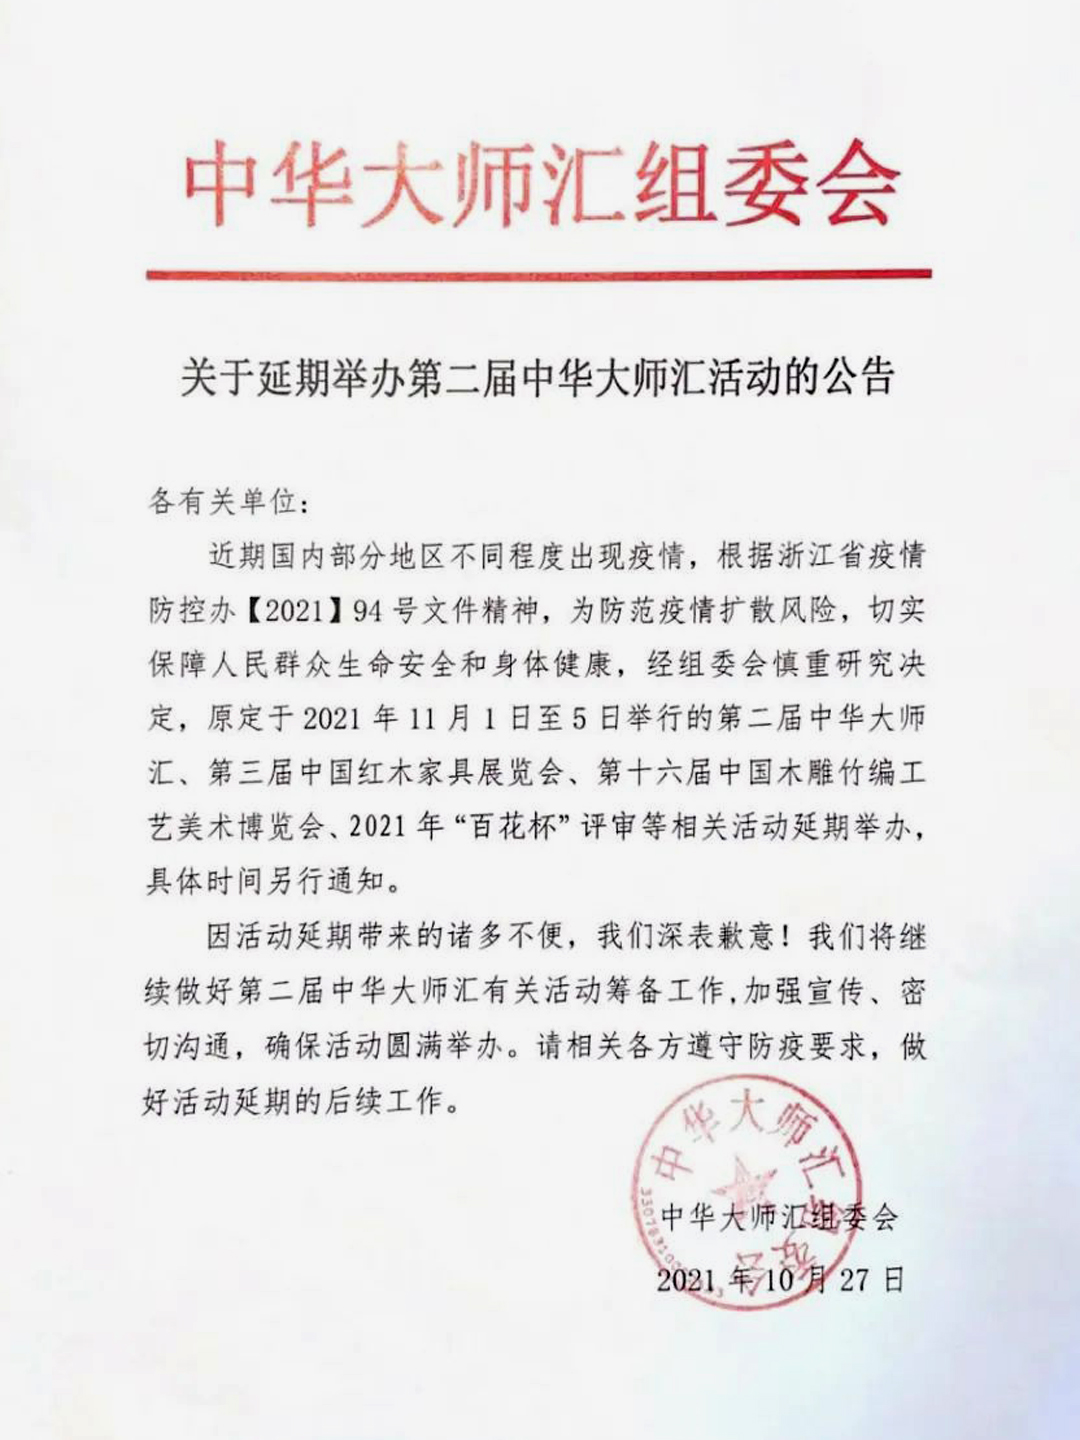 关于2021年中国工艺美术协会“百花杯”评审活动延期的通知 (2).jpg